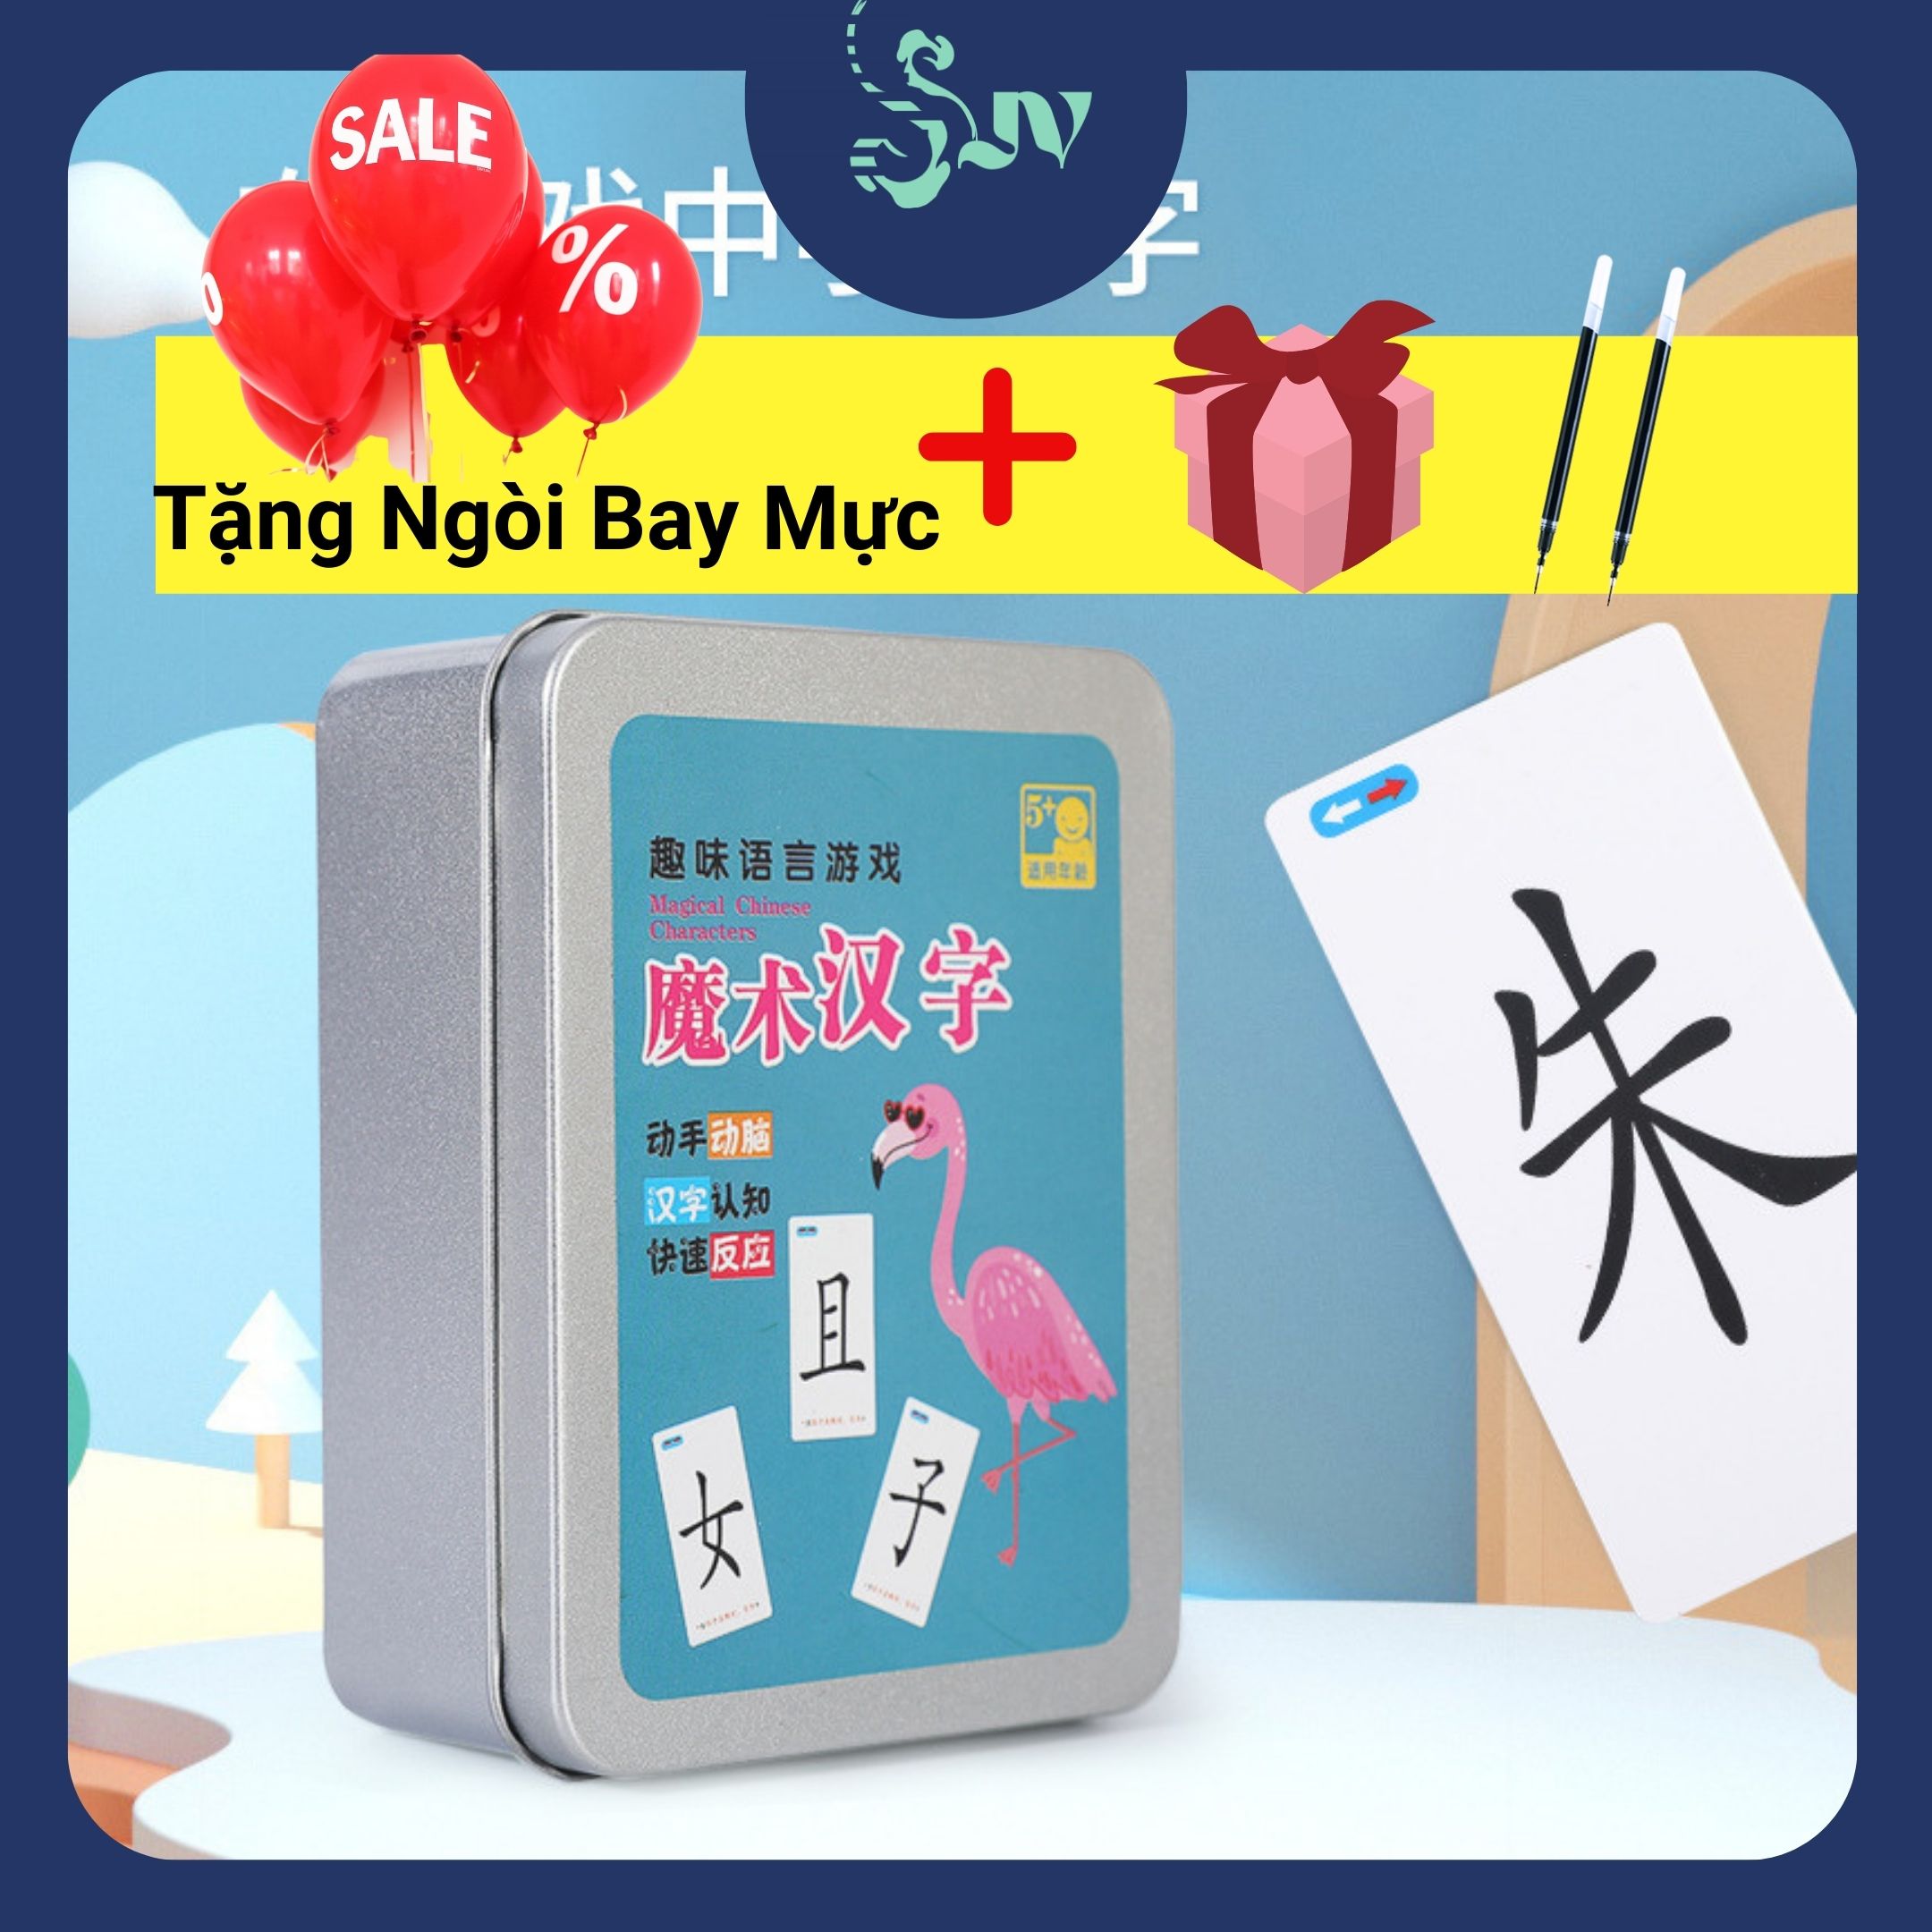 Bộ thẻ flashcard chữ Hán cho người học tiếng Trung dễ nhớ mặt chữ